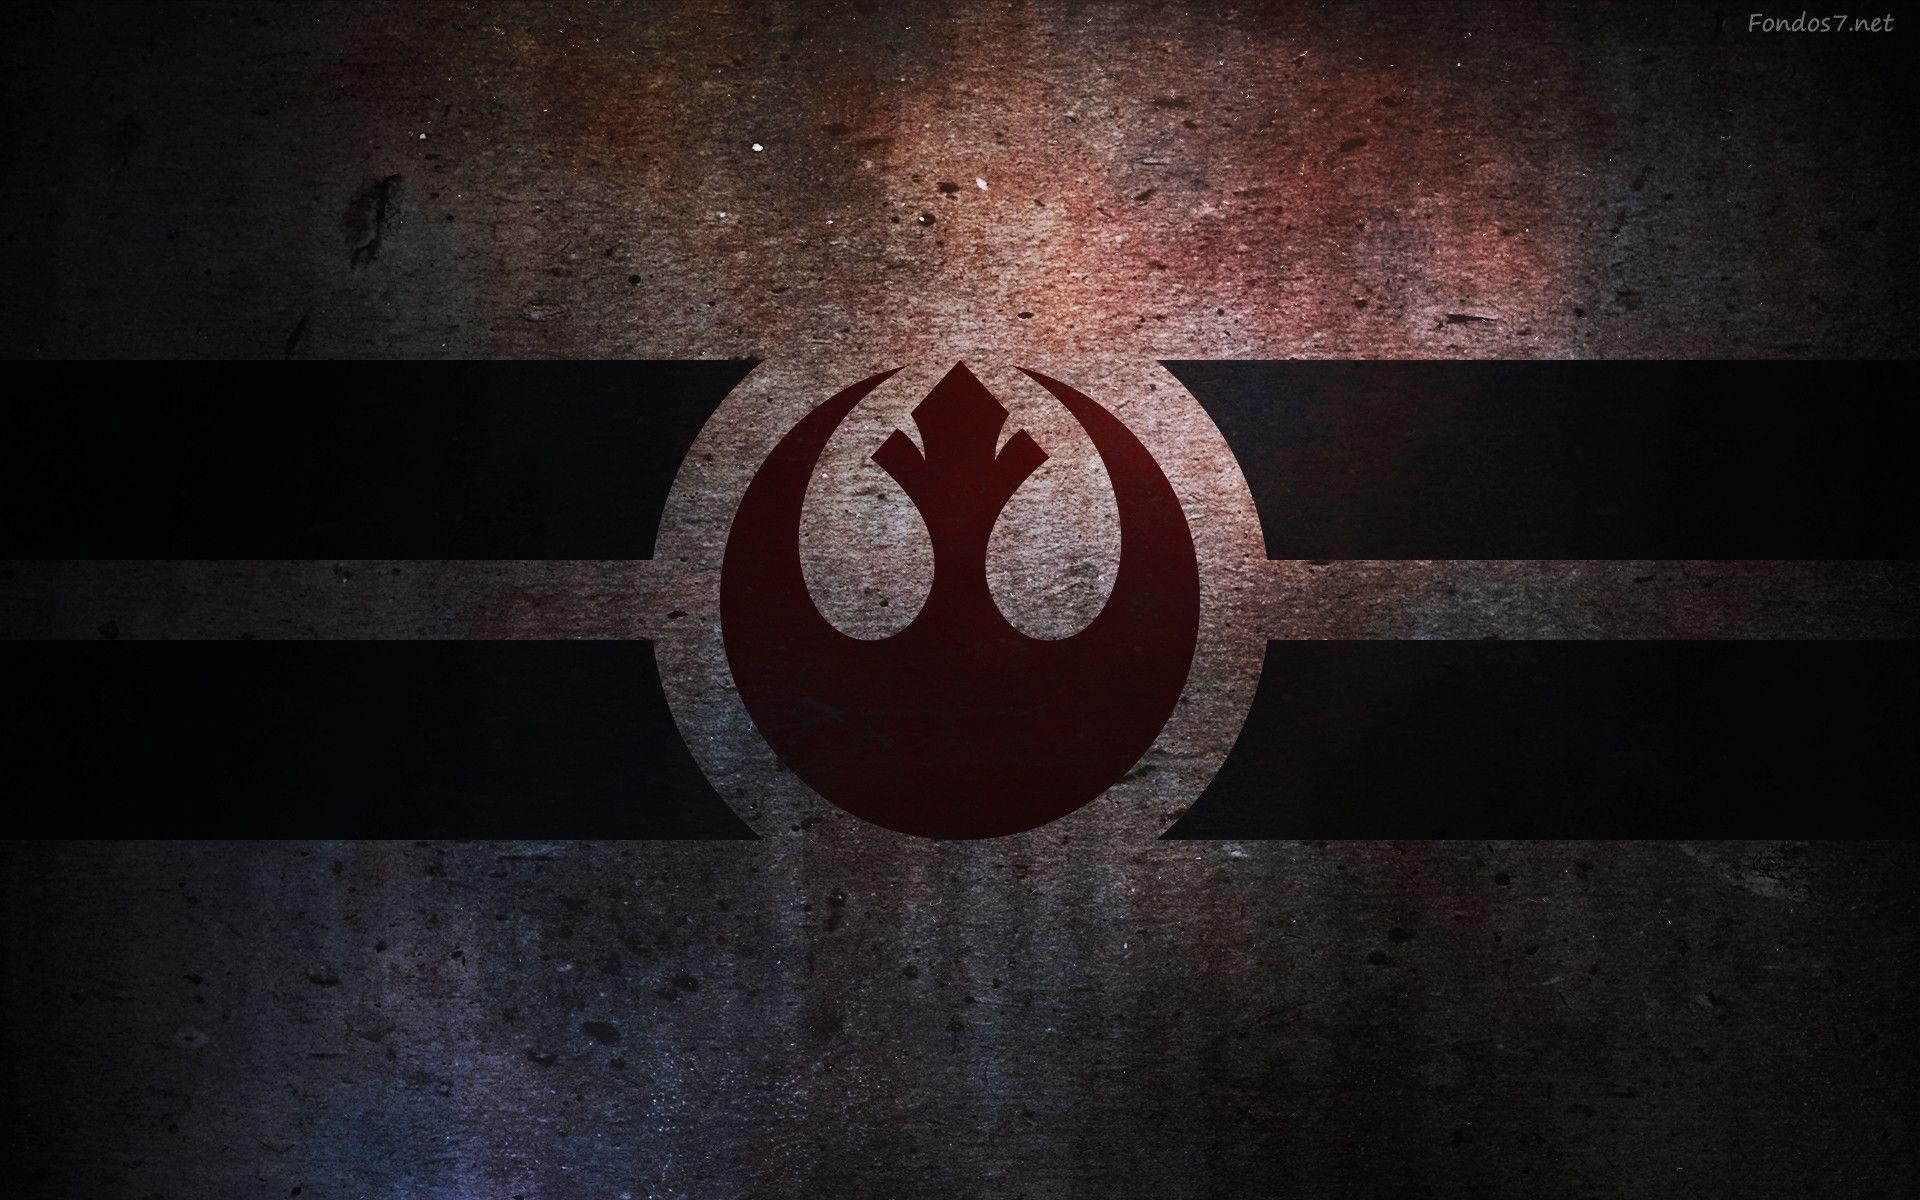 Rebel Alliance Logo wallpaper 30840